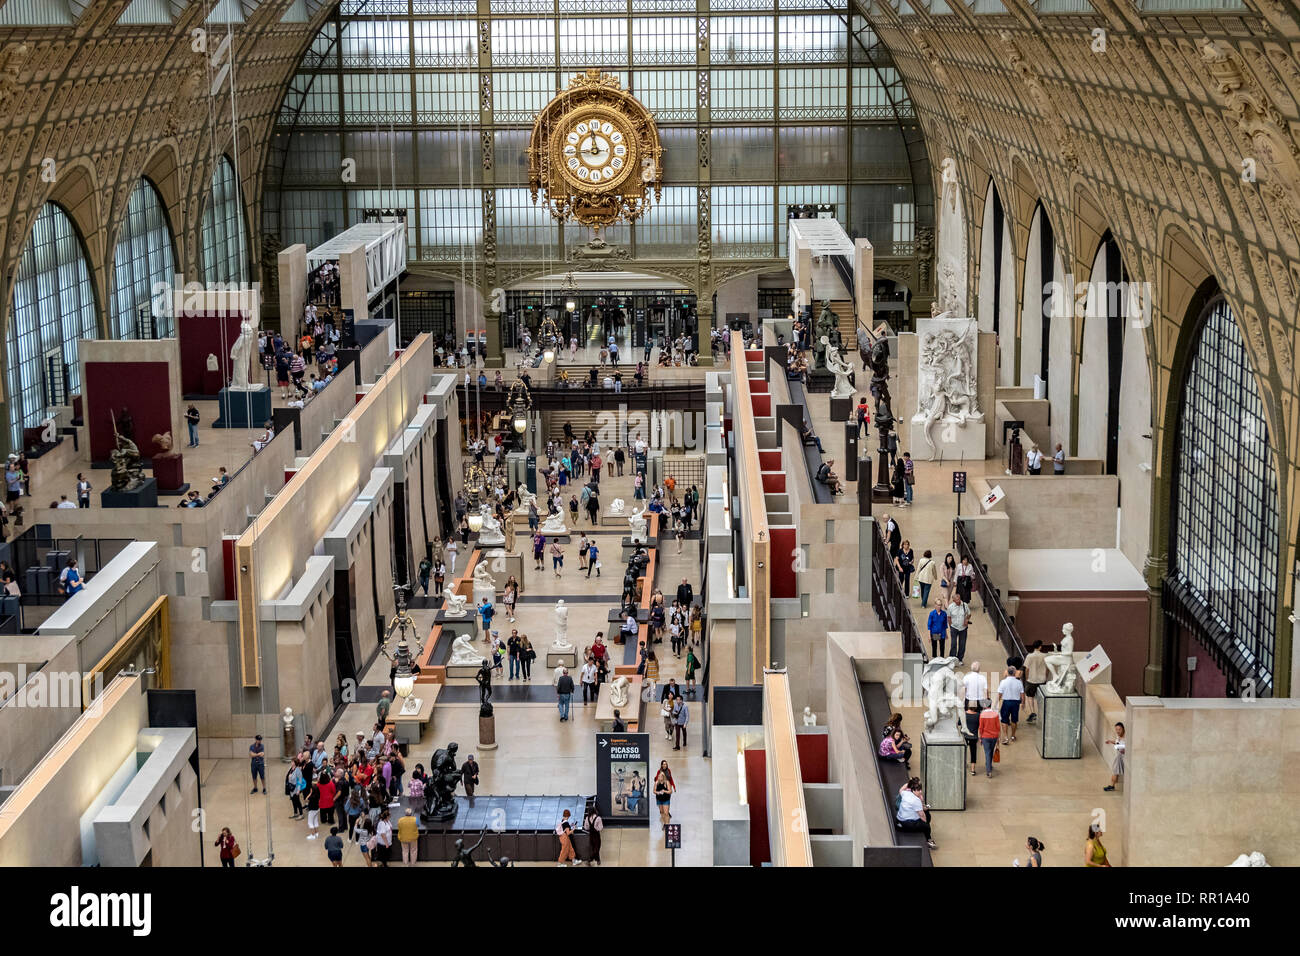 Innenraum des Musée d'Orsay, das Museumsgebäude war ursprünglich ein Bahnhof, Gare d'Orsay, und beherbergt heute eine Sammlung von Kunst, Paris Stockfoto